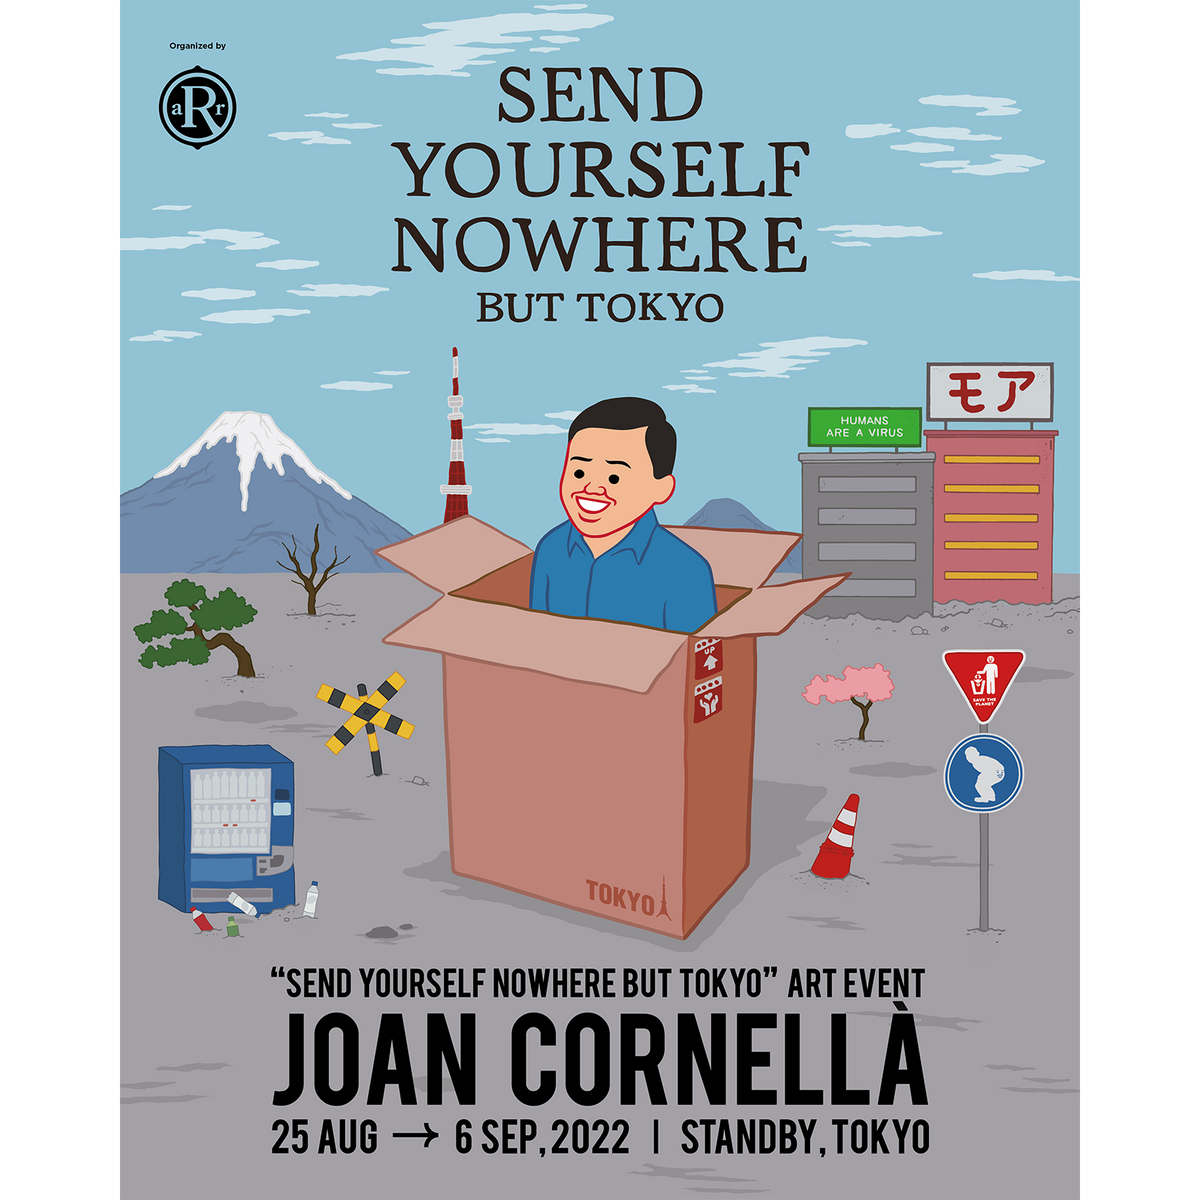 Joan Cornellà (ホアン・コルネラ) が ”SEND YOURSELF